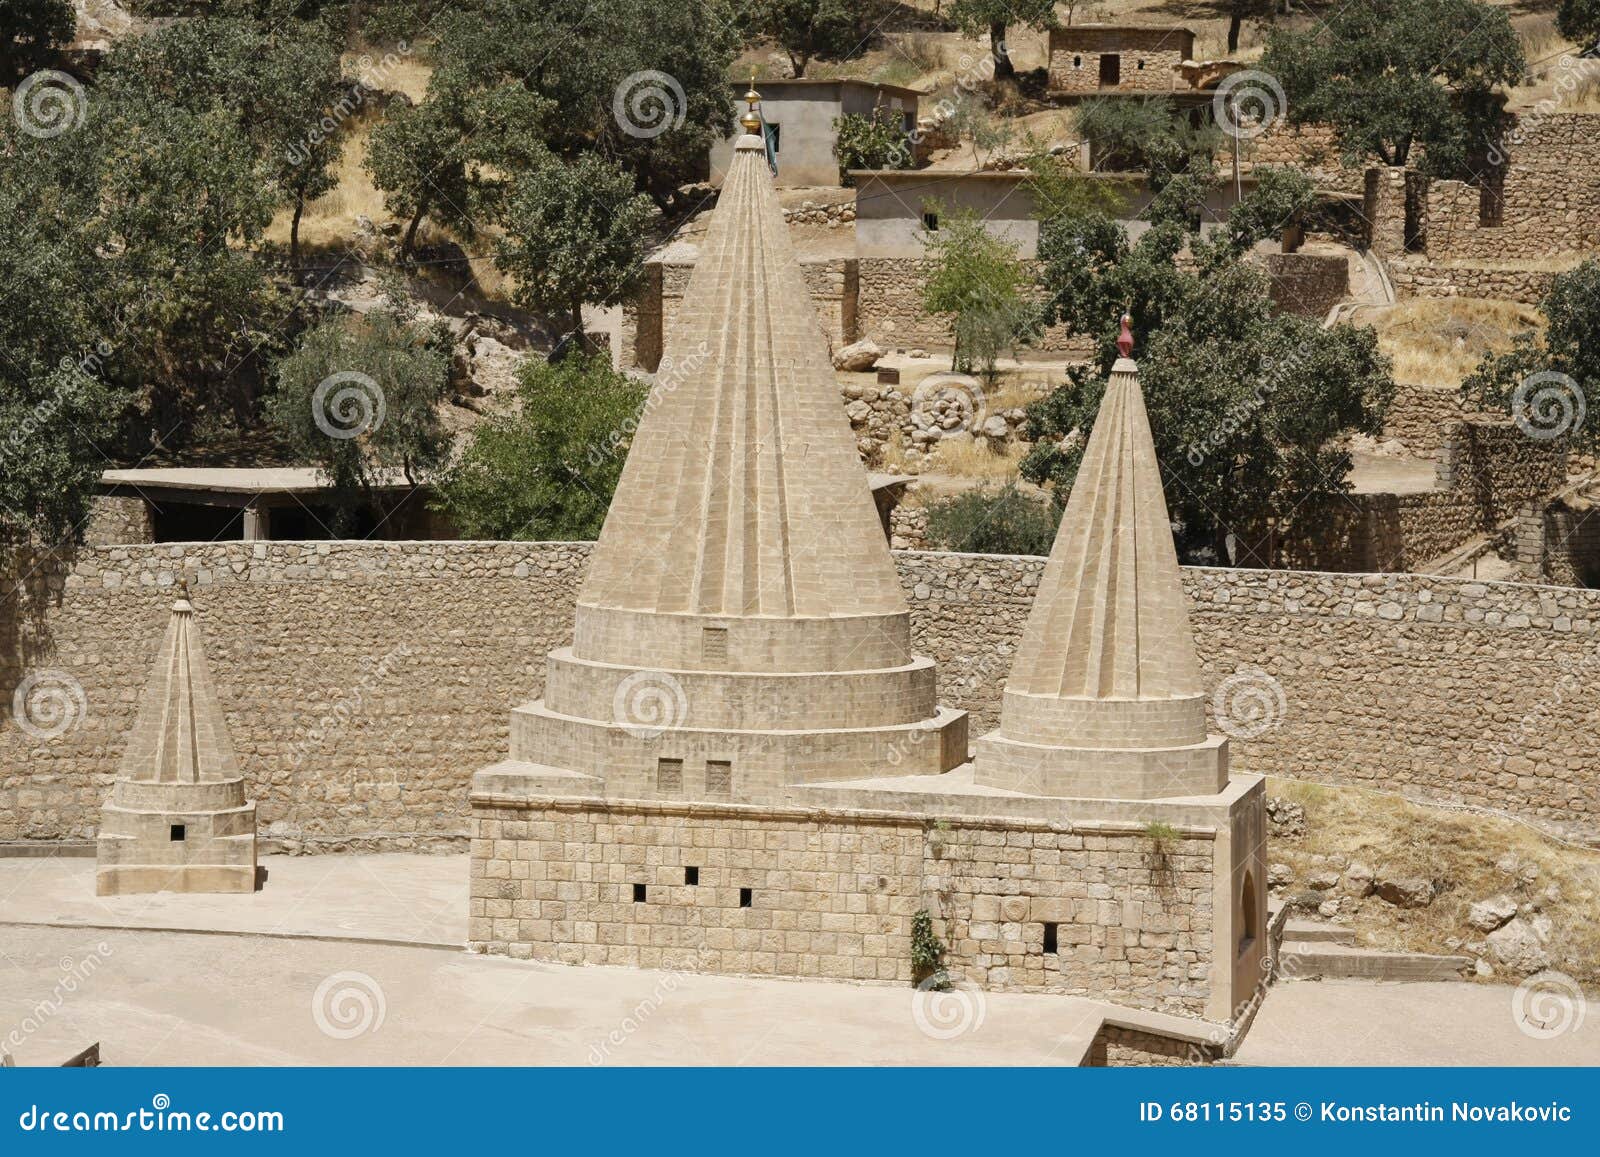 a yezidi temple in lalish, iraqi kurdistan